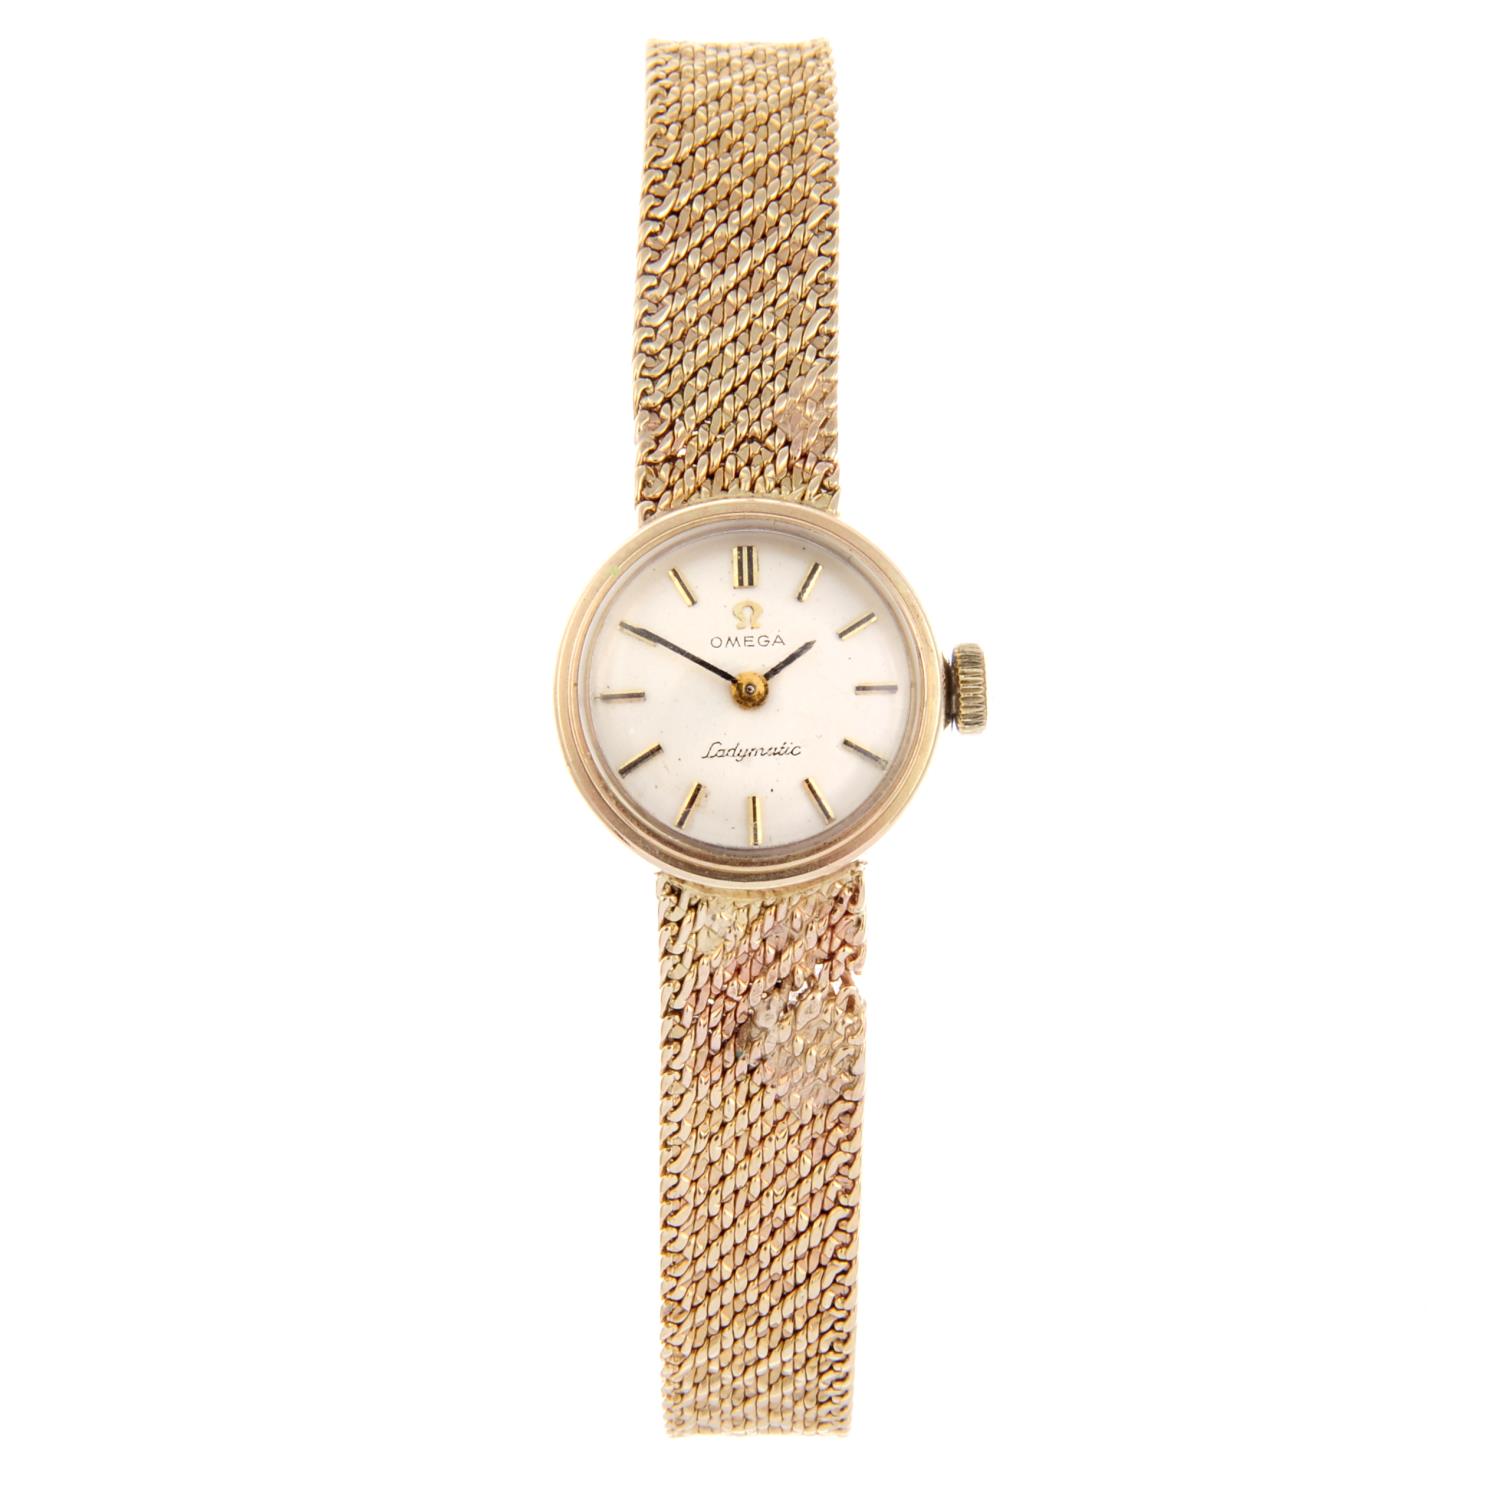 OMEGA - a lady's Ladymatic bracelet watch.